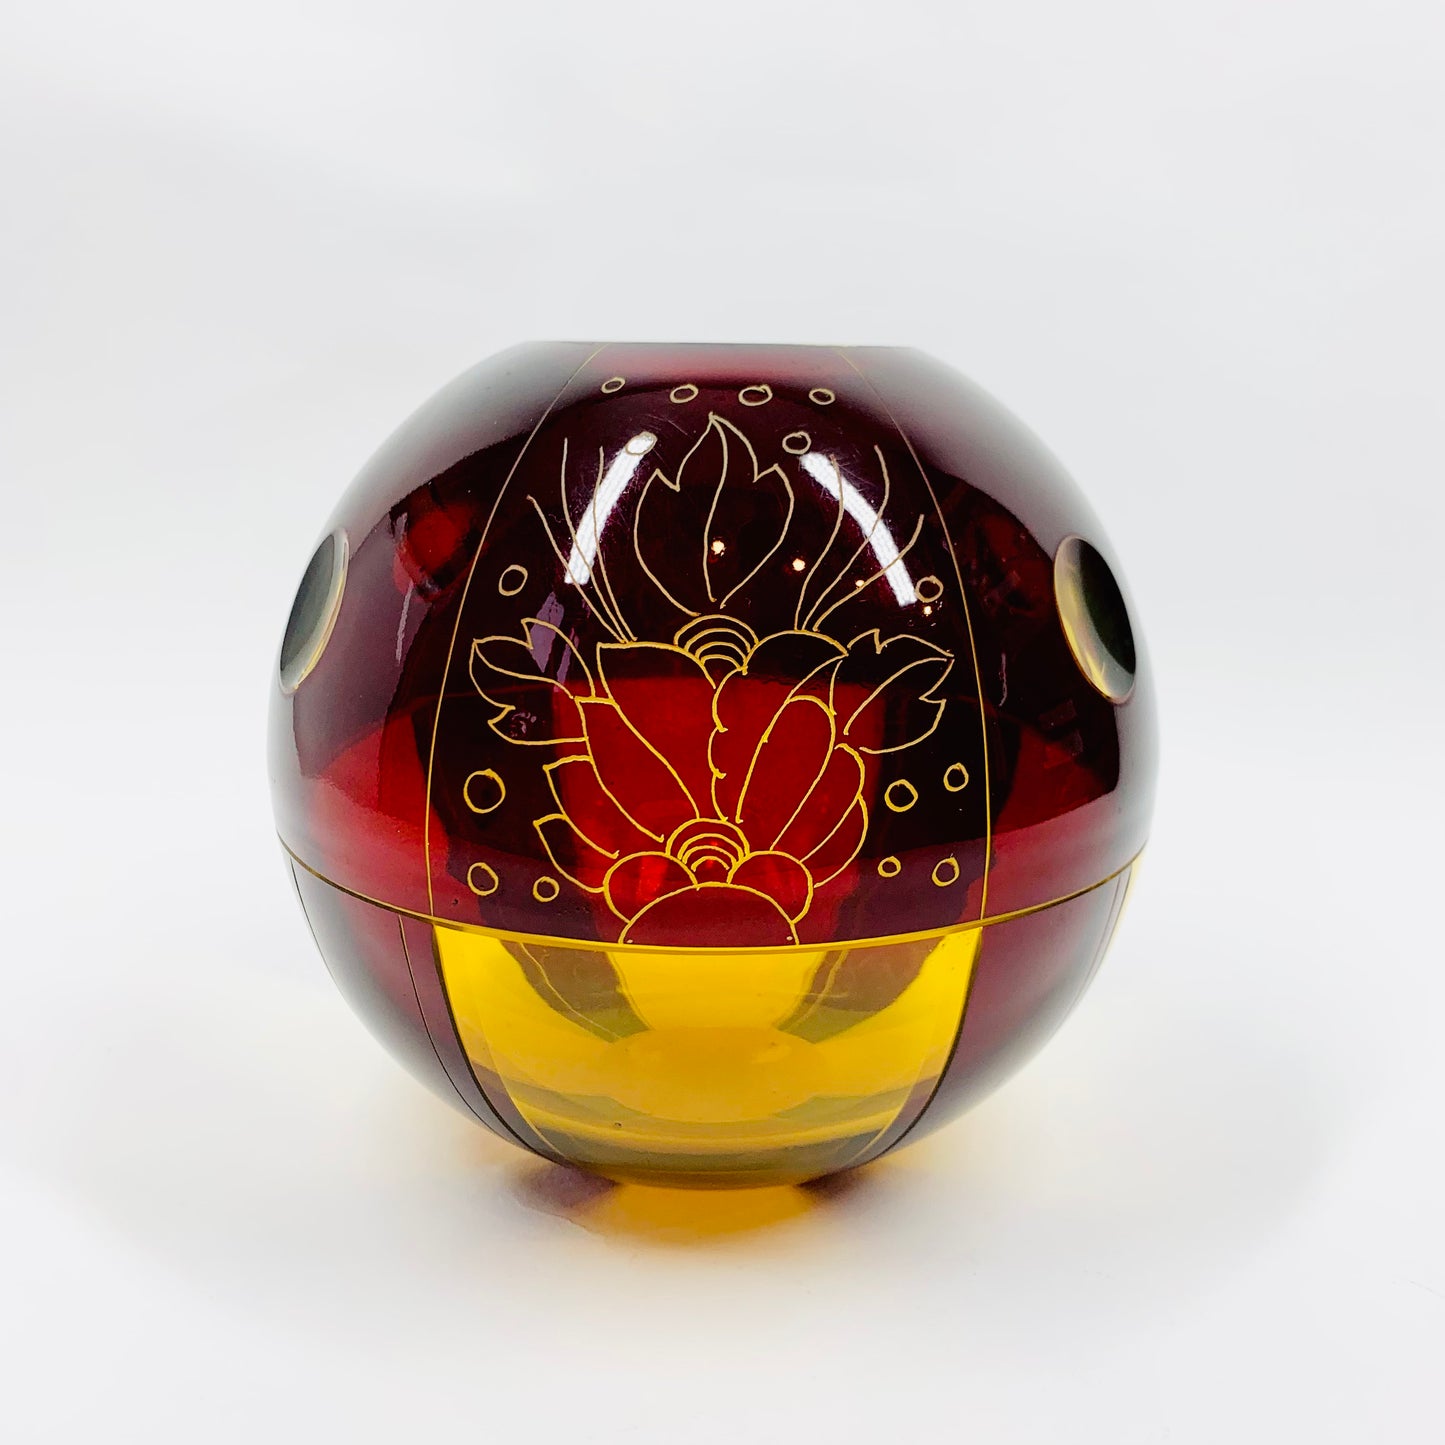 Antique Art Deco ruby enamel globe citrine glass posy vase by Karl Palda